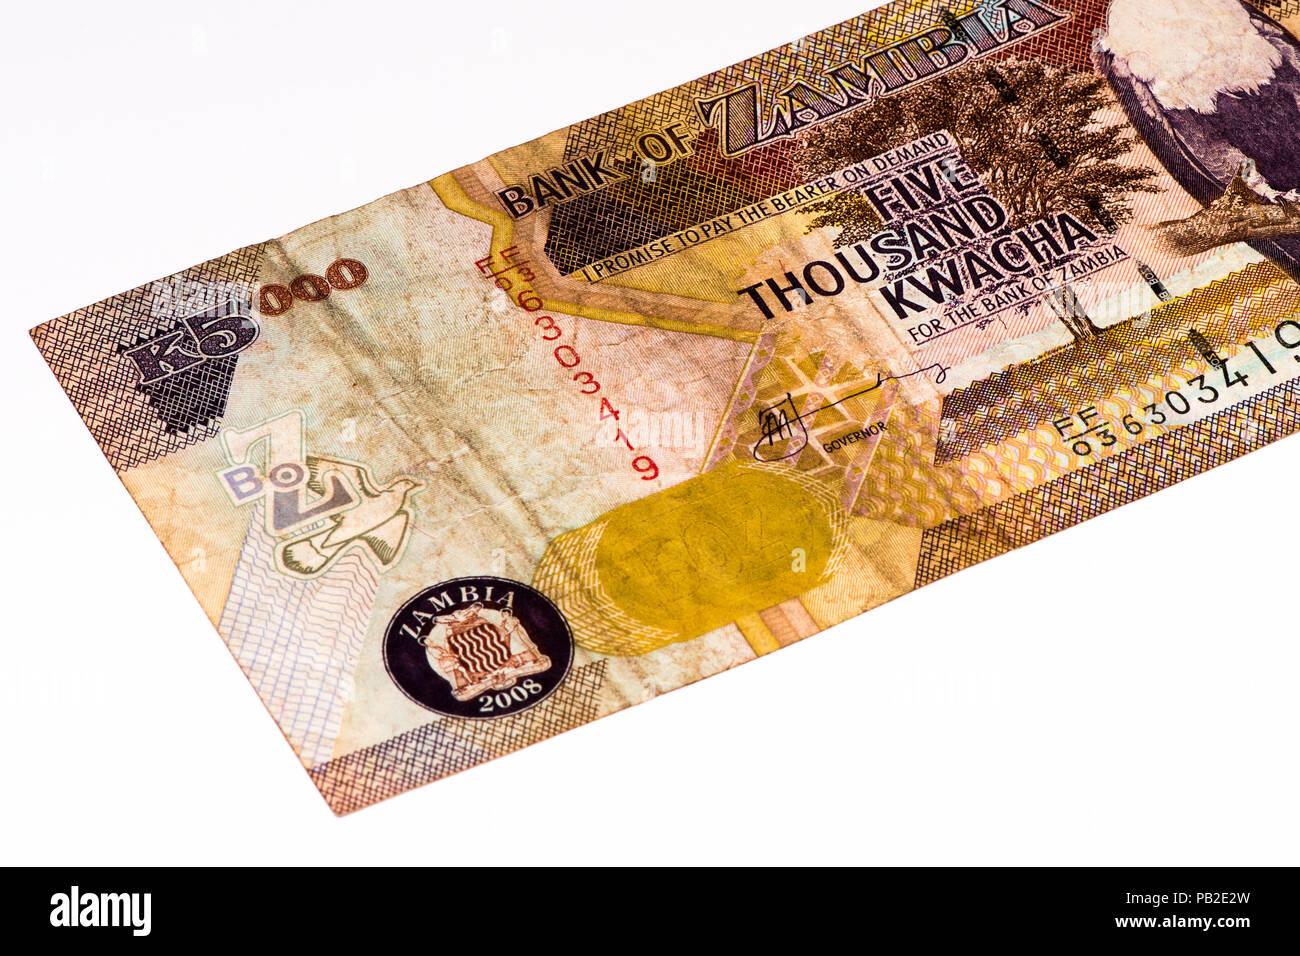 5000 Zambian kwach bank note. Zambian kwacha is the national currency of Zambia Stock Photo